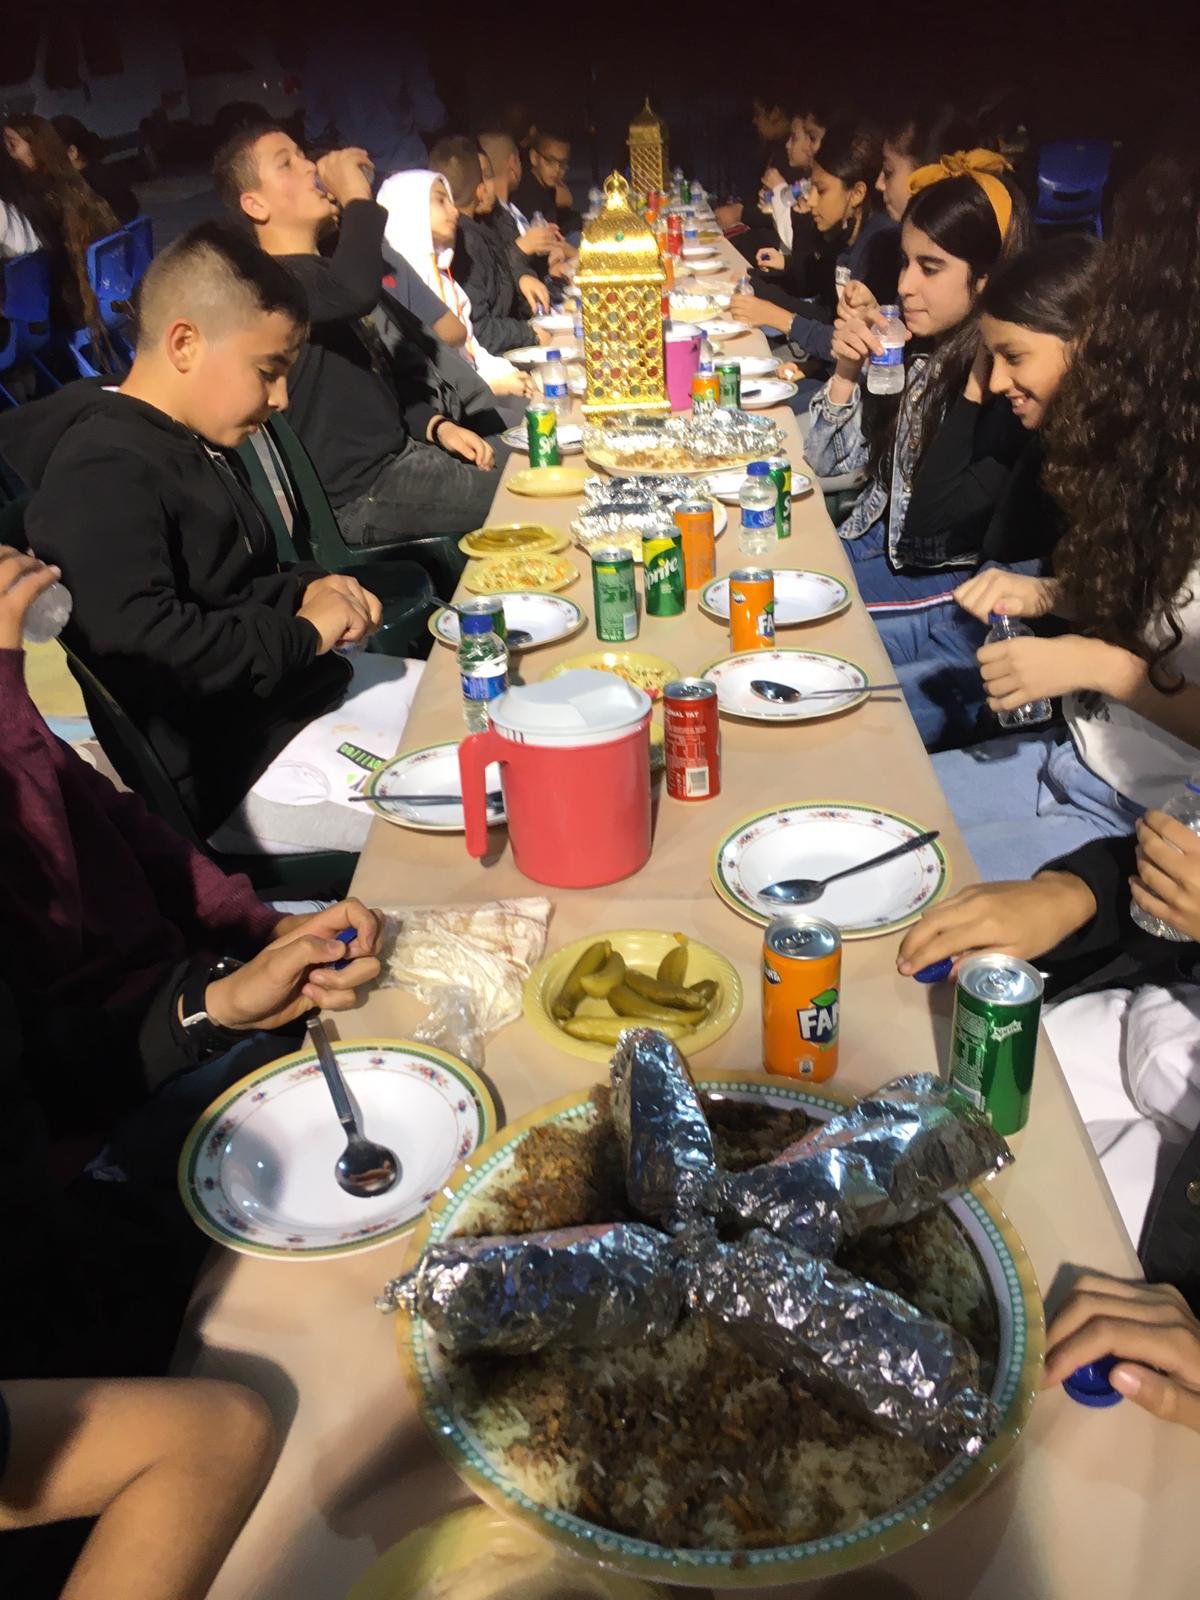 أمسية رمضانية تُعيد النكهة لطقوس وروحانيات الشهر الفضيل في المدرسة الجماهيريّة بئر الأمير-الناصرة-17